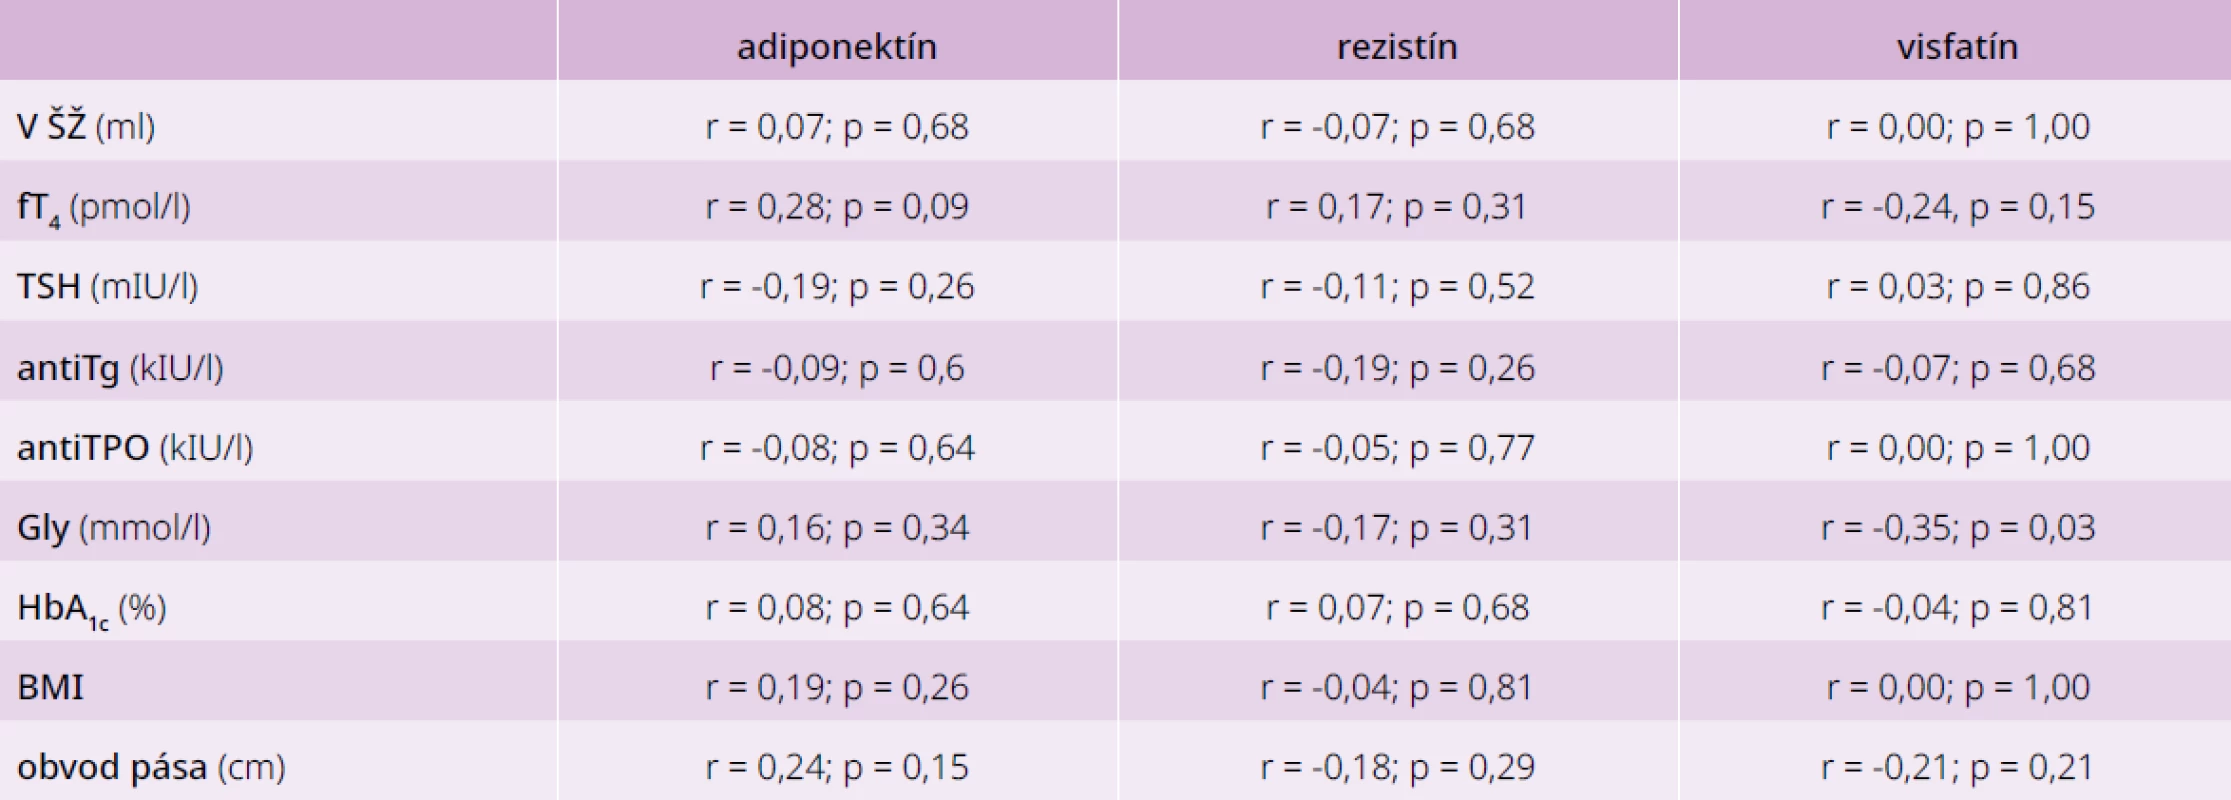 Korelácie medzi jednotlivými adipokínmi a parametrami glycidového a tyroidálneho
metabolizmu u pacientov s AIT bez poruchy glukózového metabolizmu